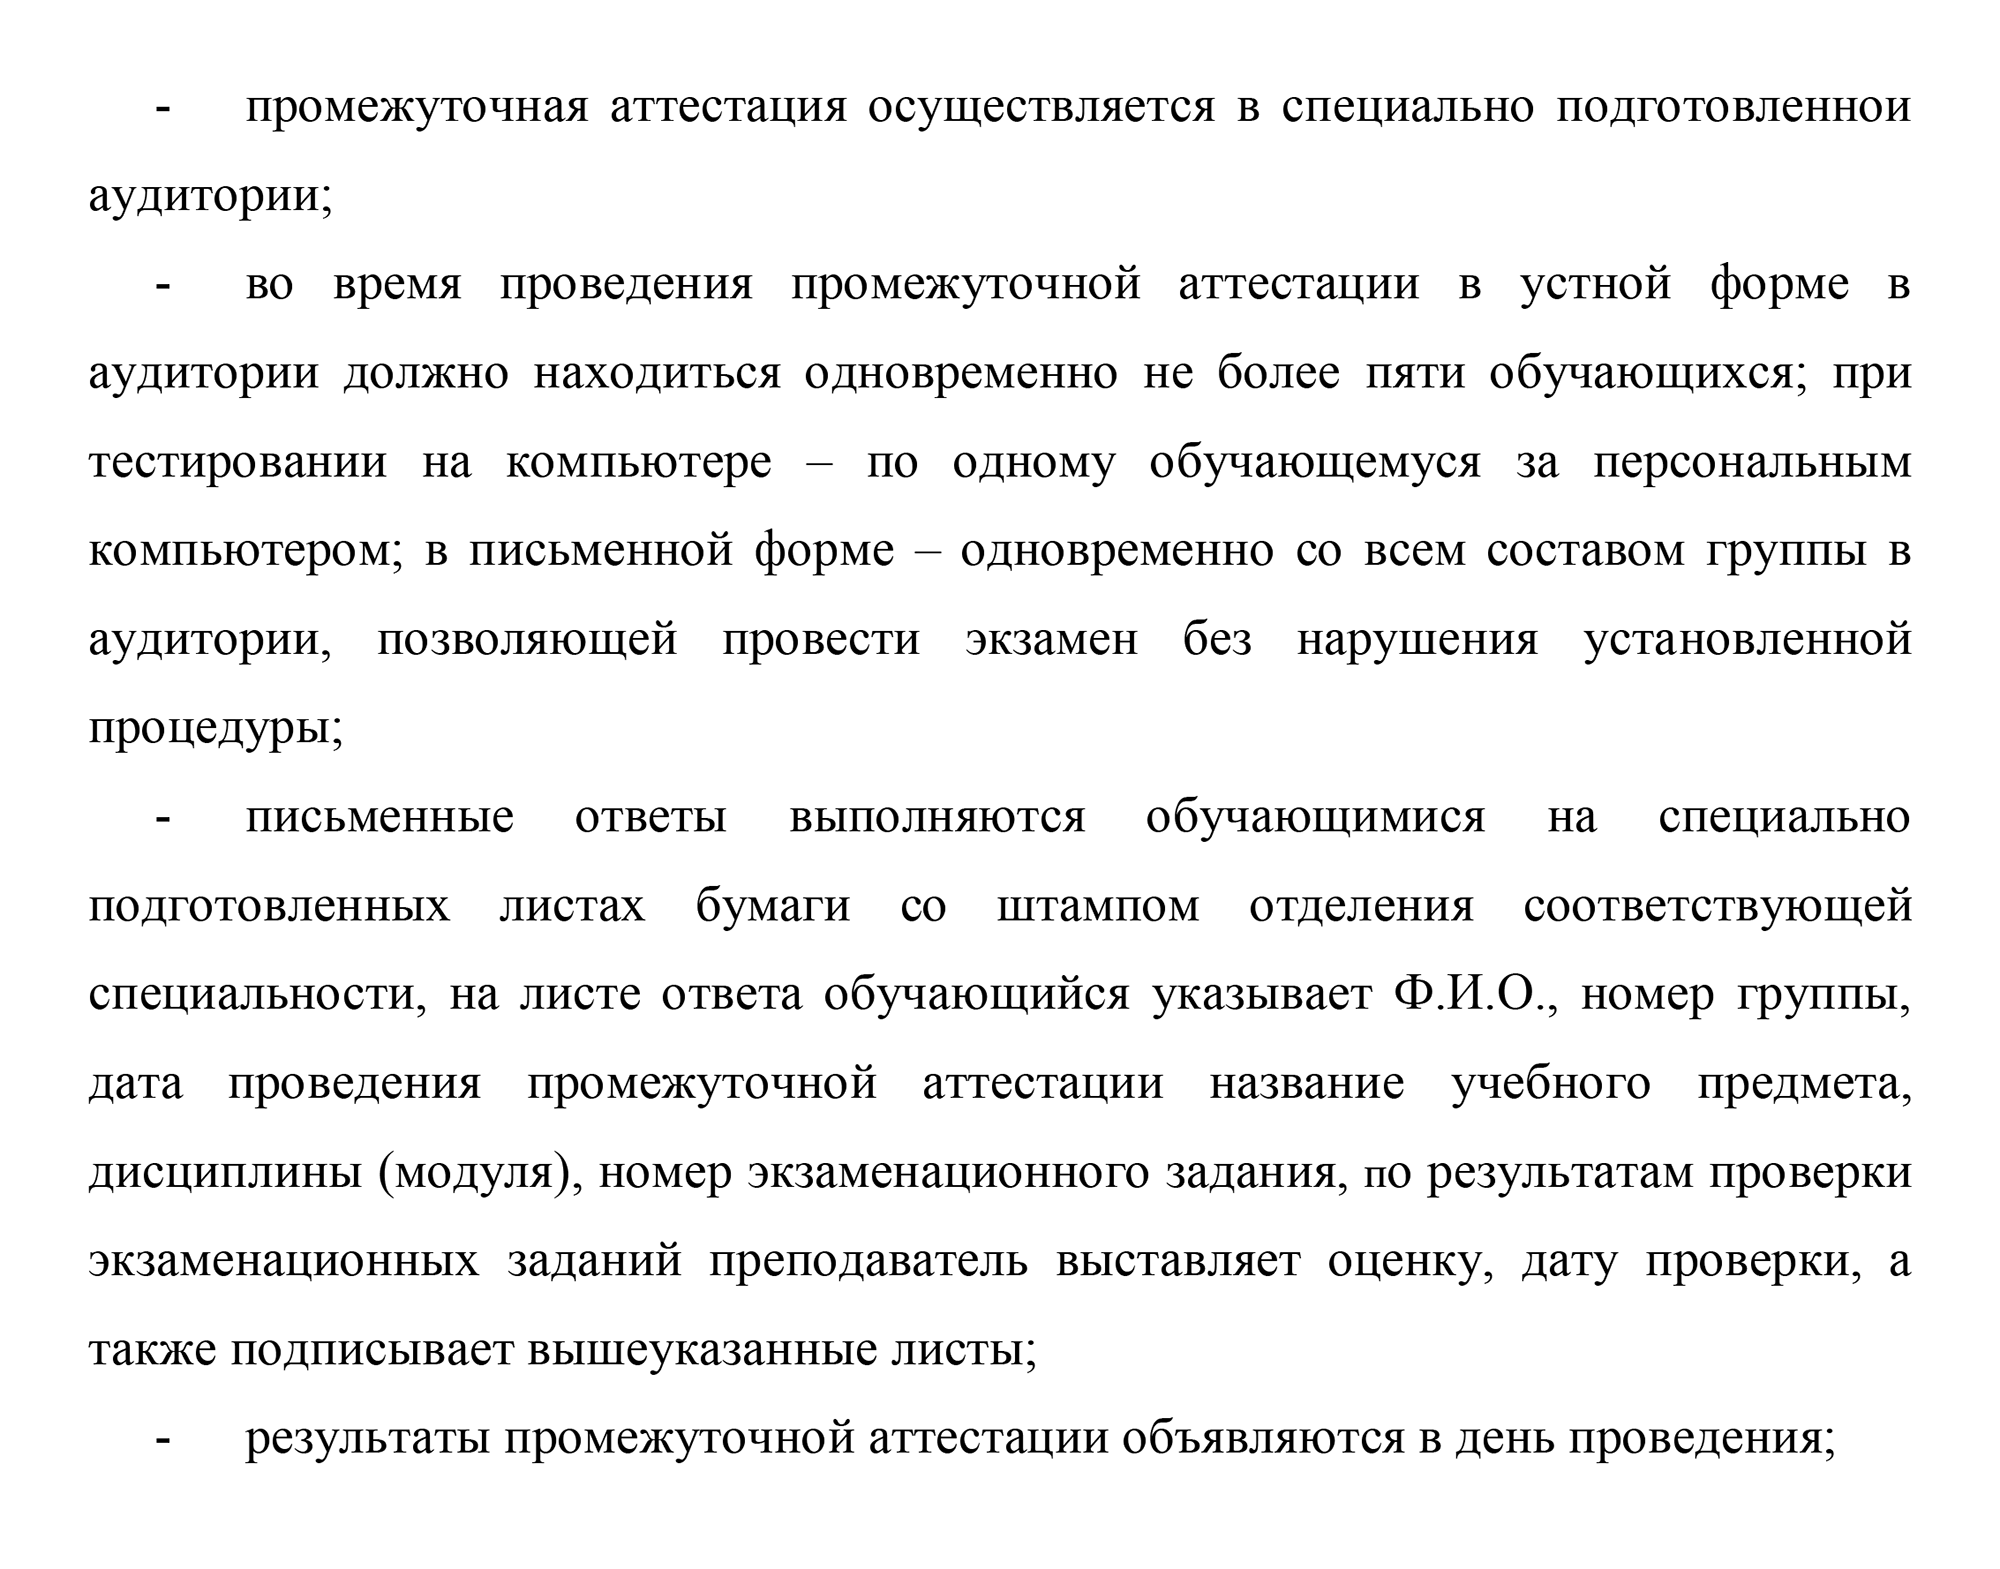 Вот, например, требования при проведении экзаменов в Омском государственном медицинском университете. Источник: omsk-osma.ru